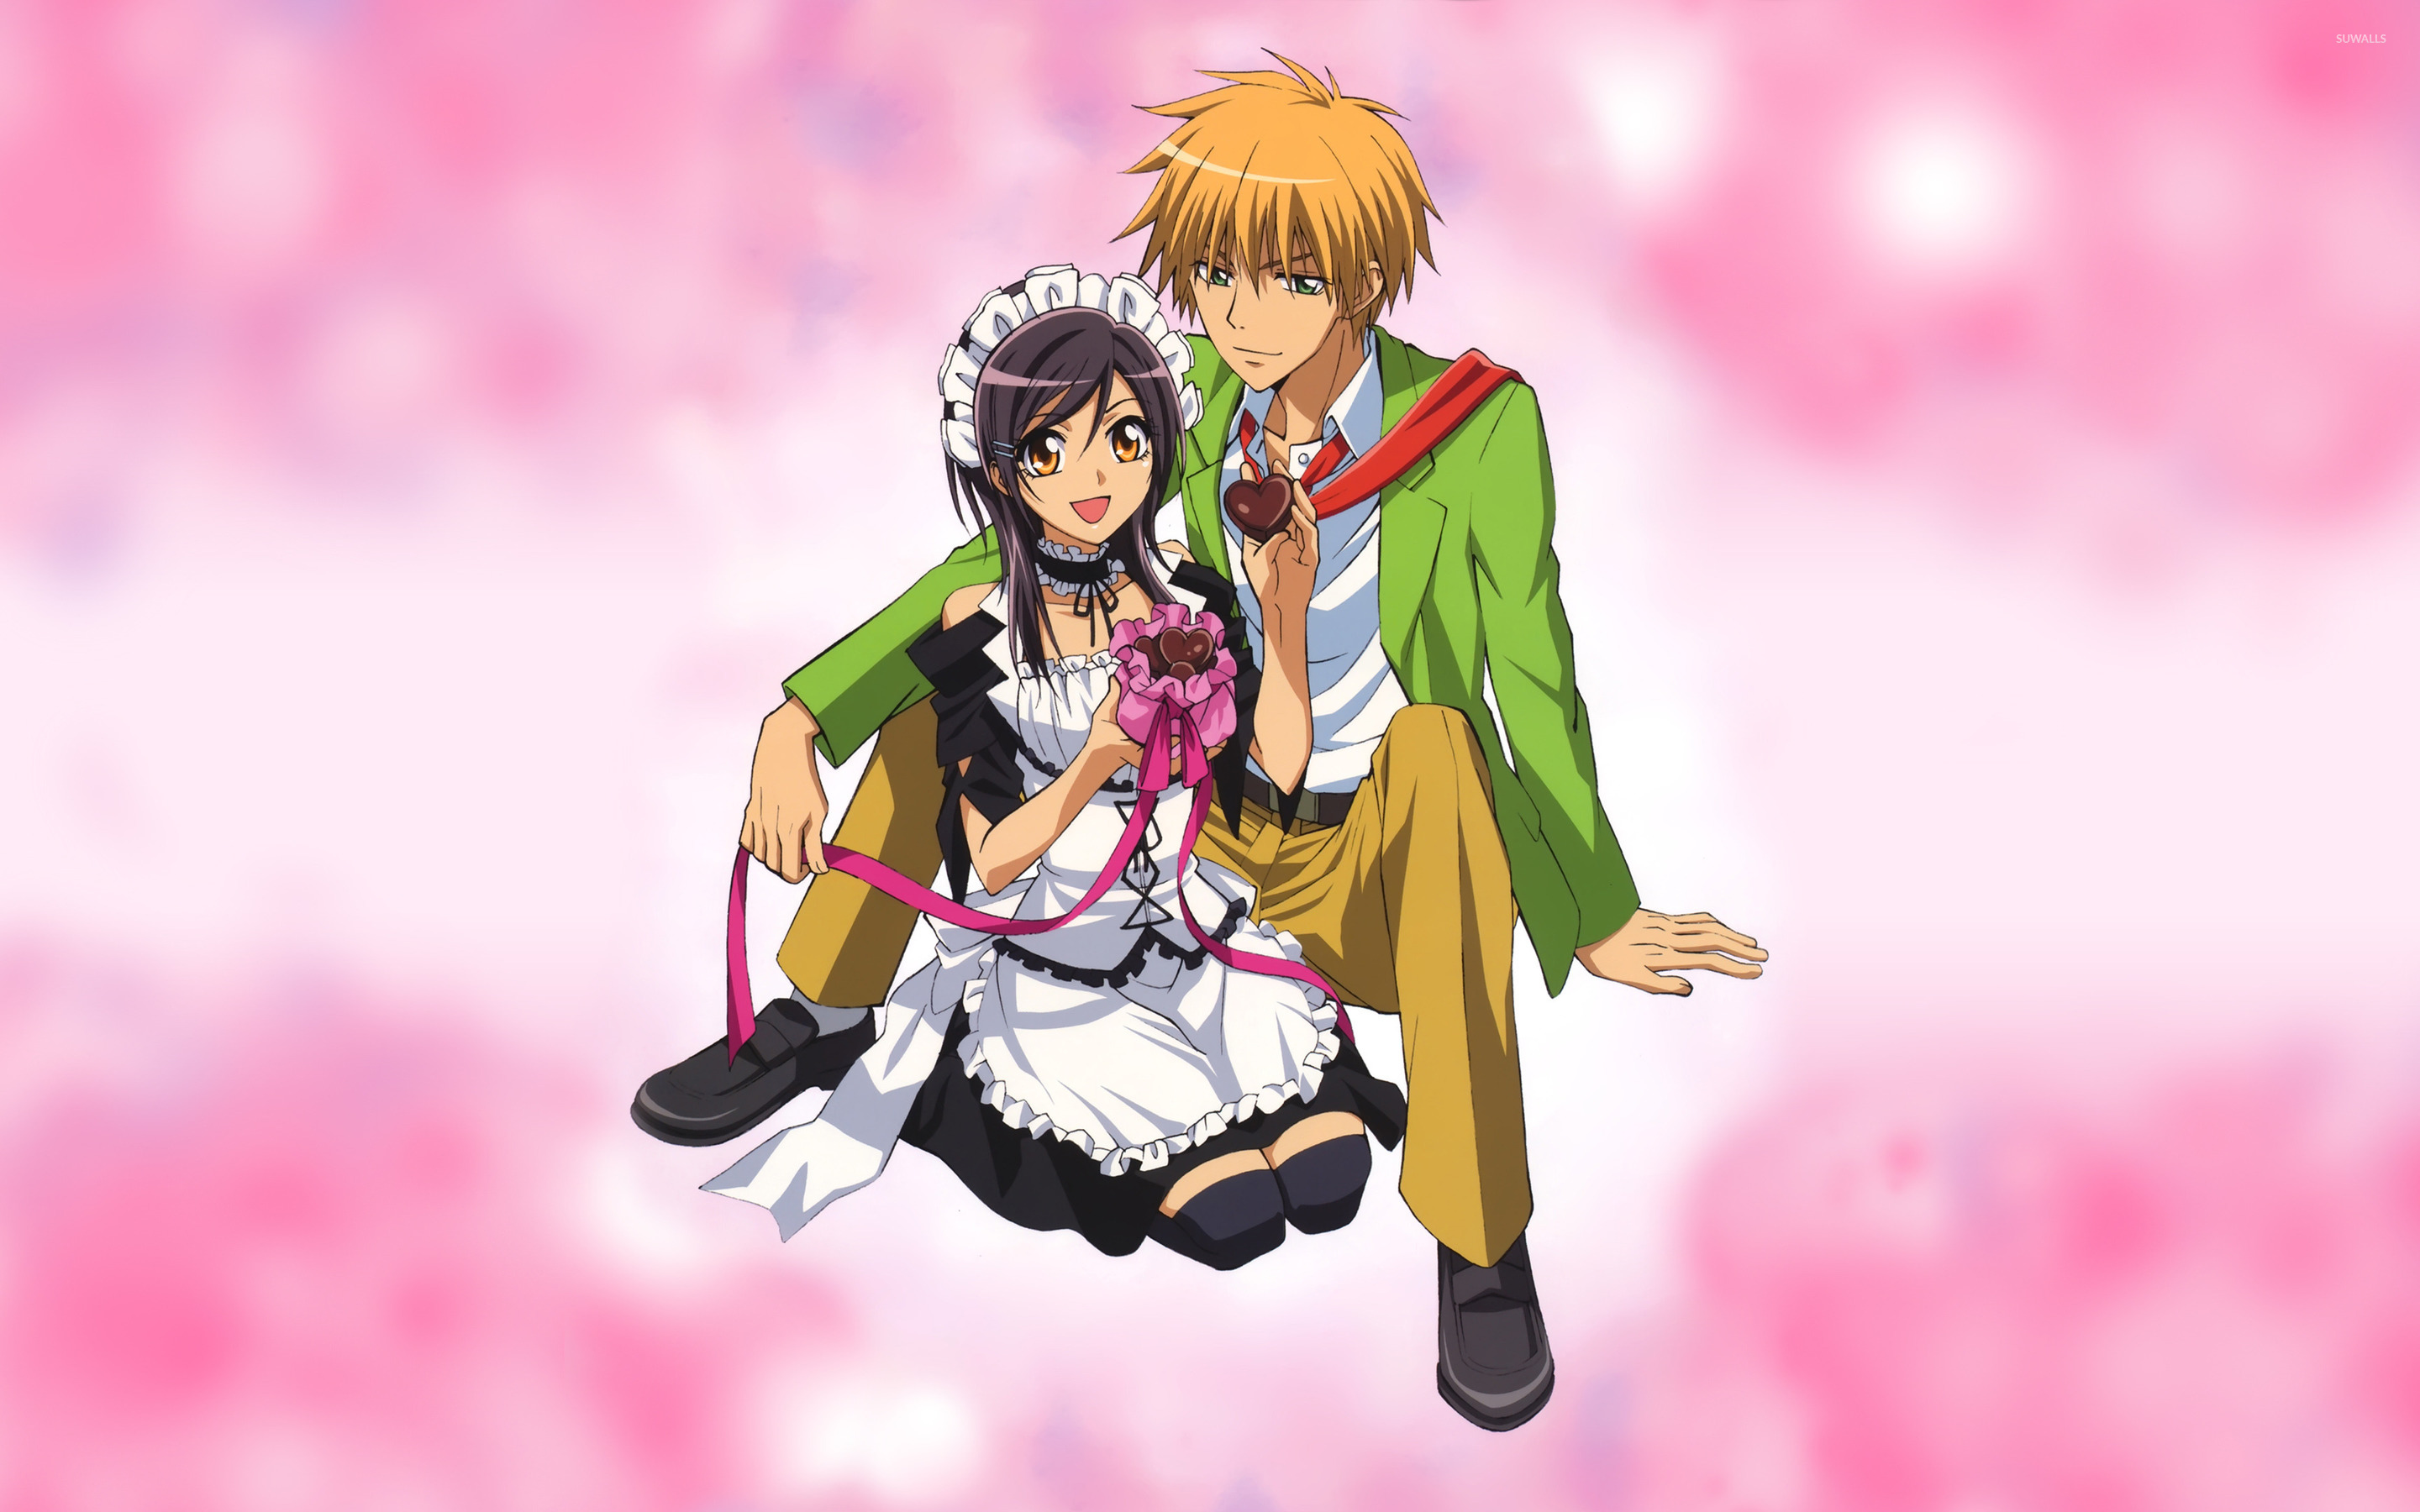 Misaki Ayuzawa and Takumi Usui - Maid Sama! wallpaper - Anime wallpapers - ...